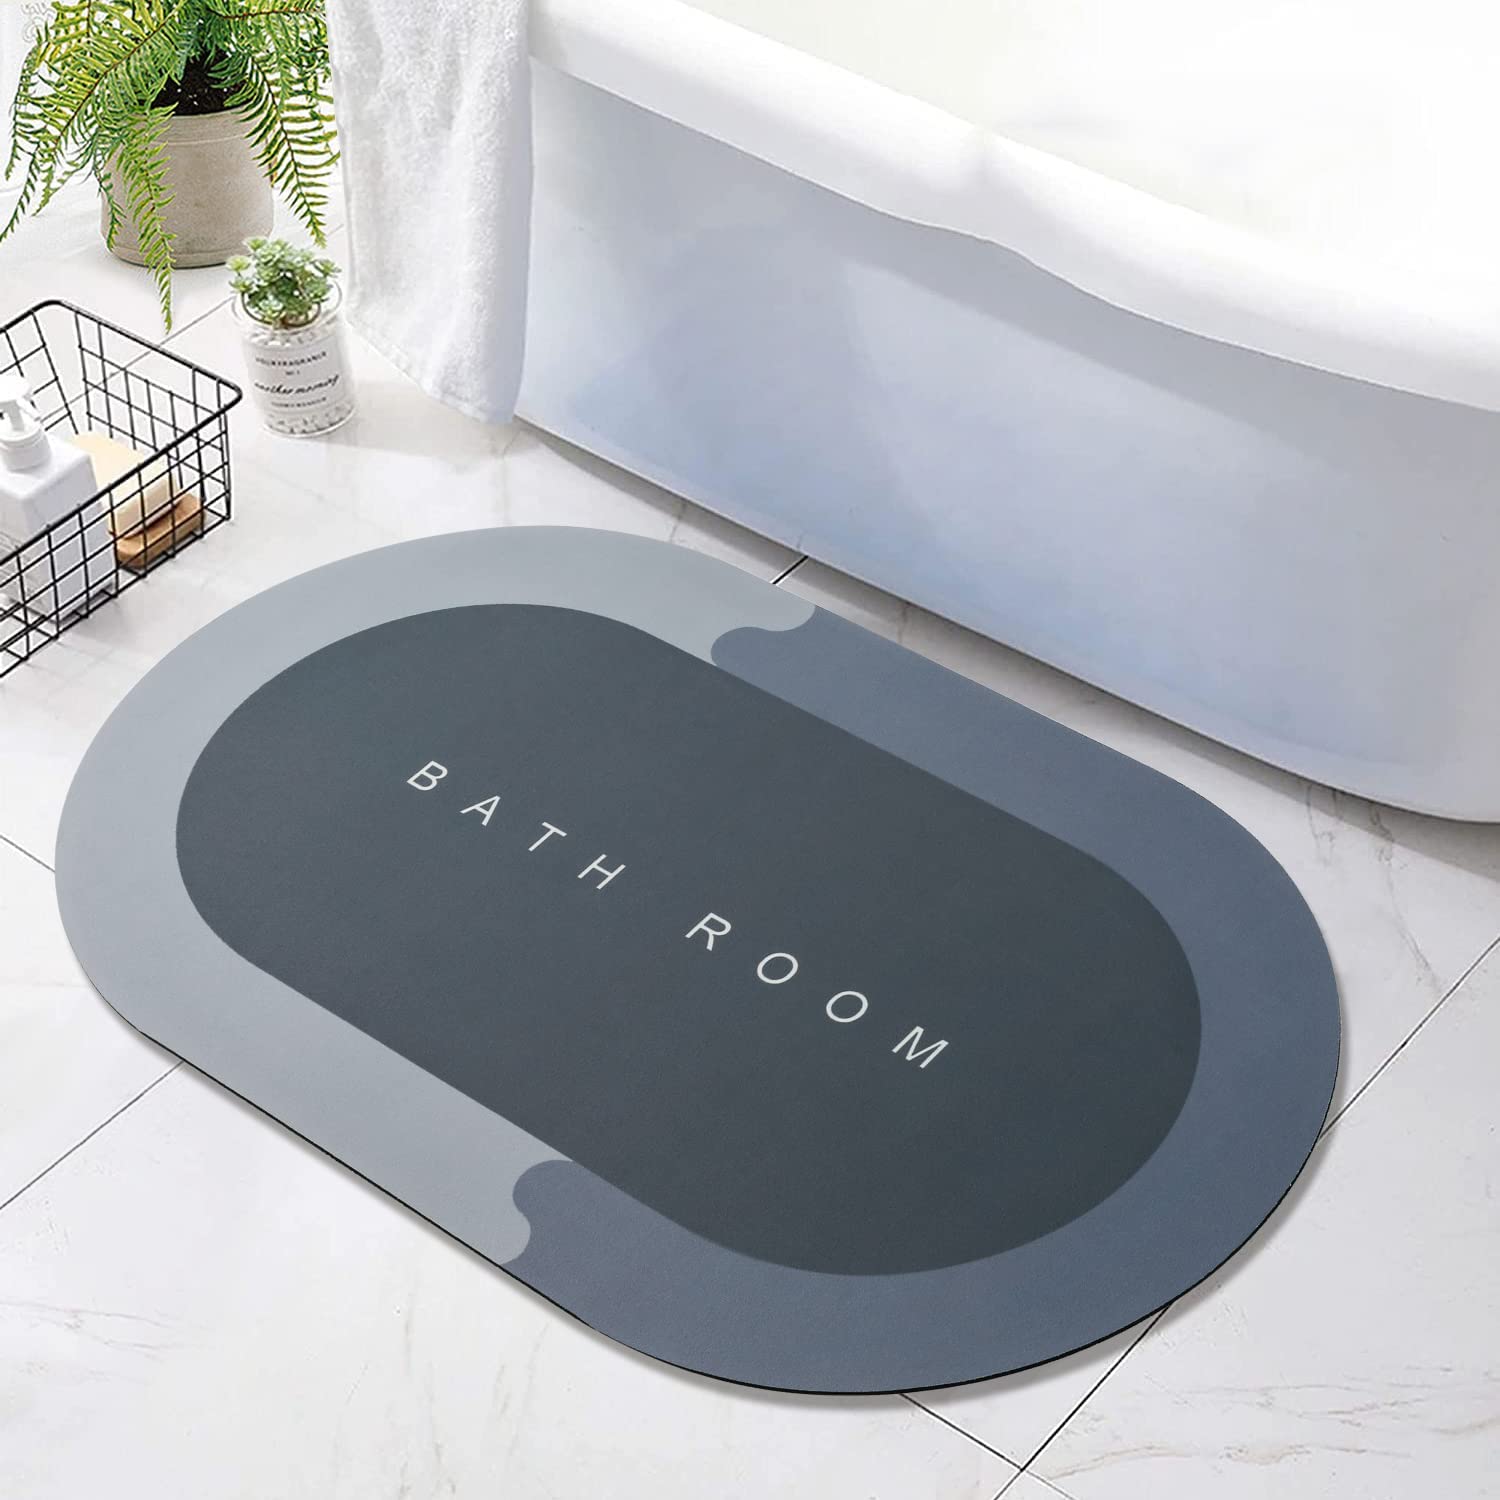 4997A  Floor Mat, Bath Mat, Doormat, Bathroom Carpet. Cushion Mat Super Absorbent Soft Carpet, Quick Dry Dirt Barrier for Home, Office 